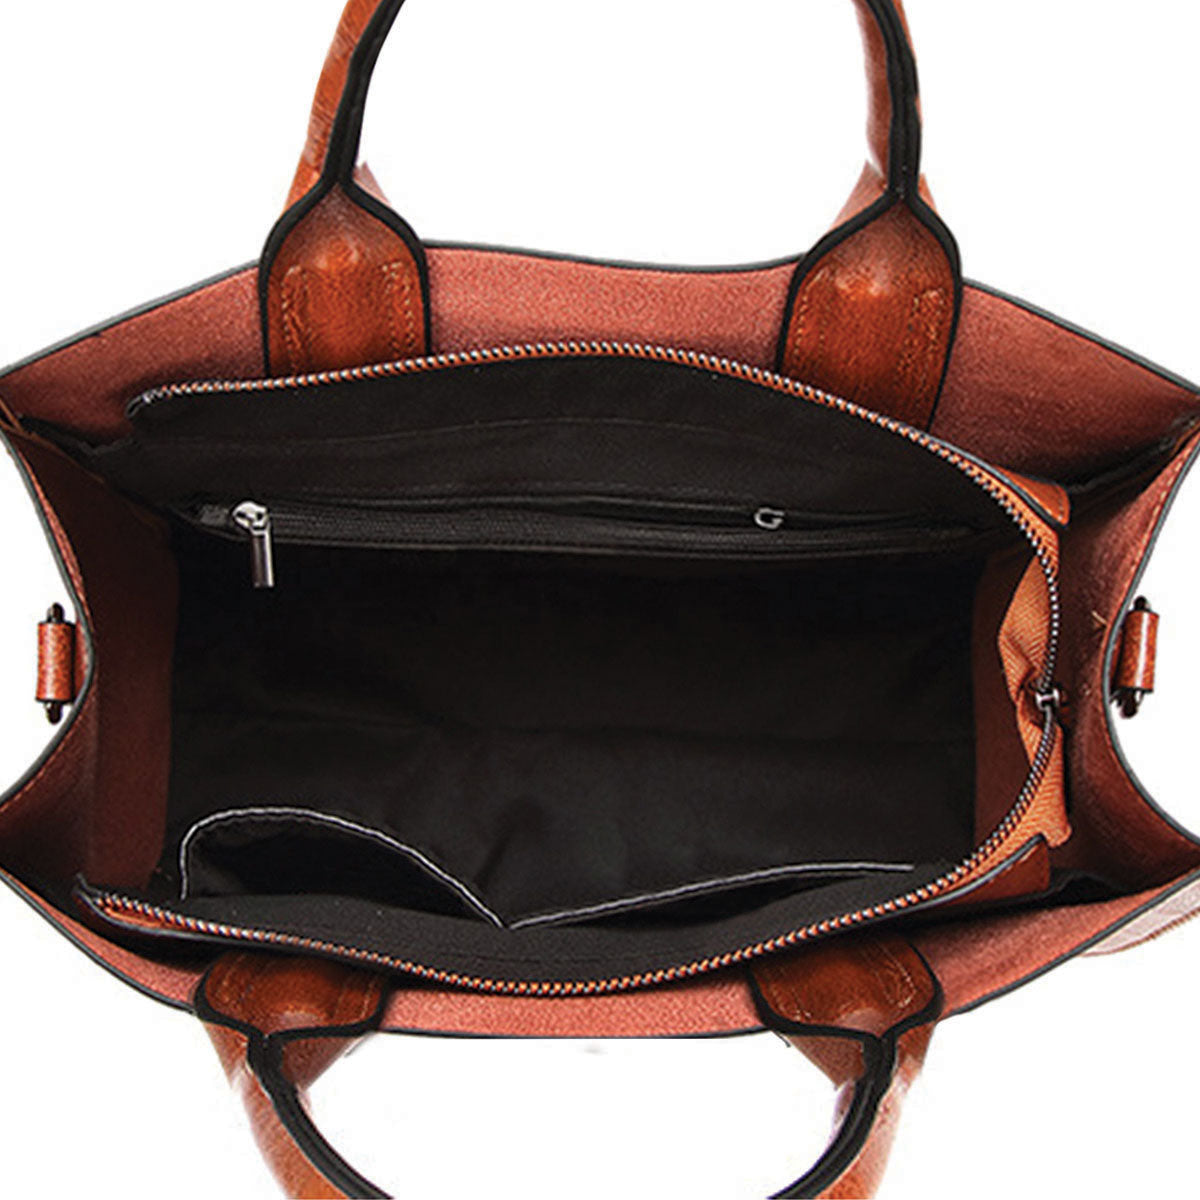 Your Best Companion - Griffon Bruxellois Luxury Handbag V1